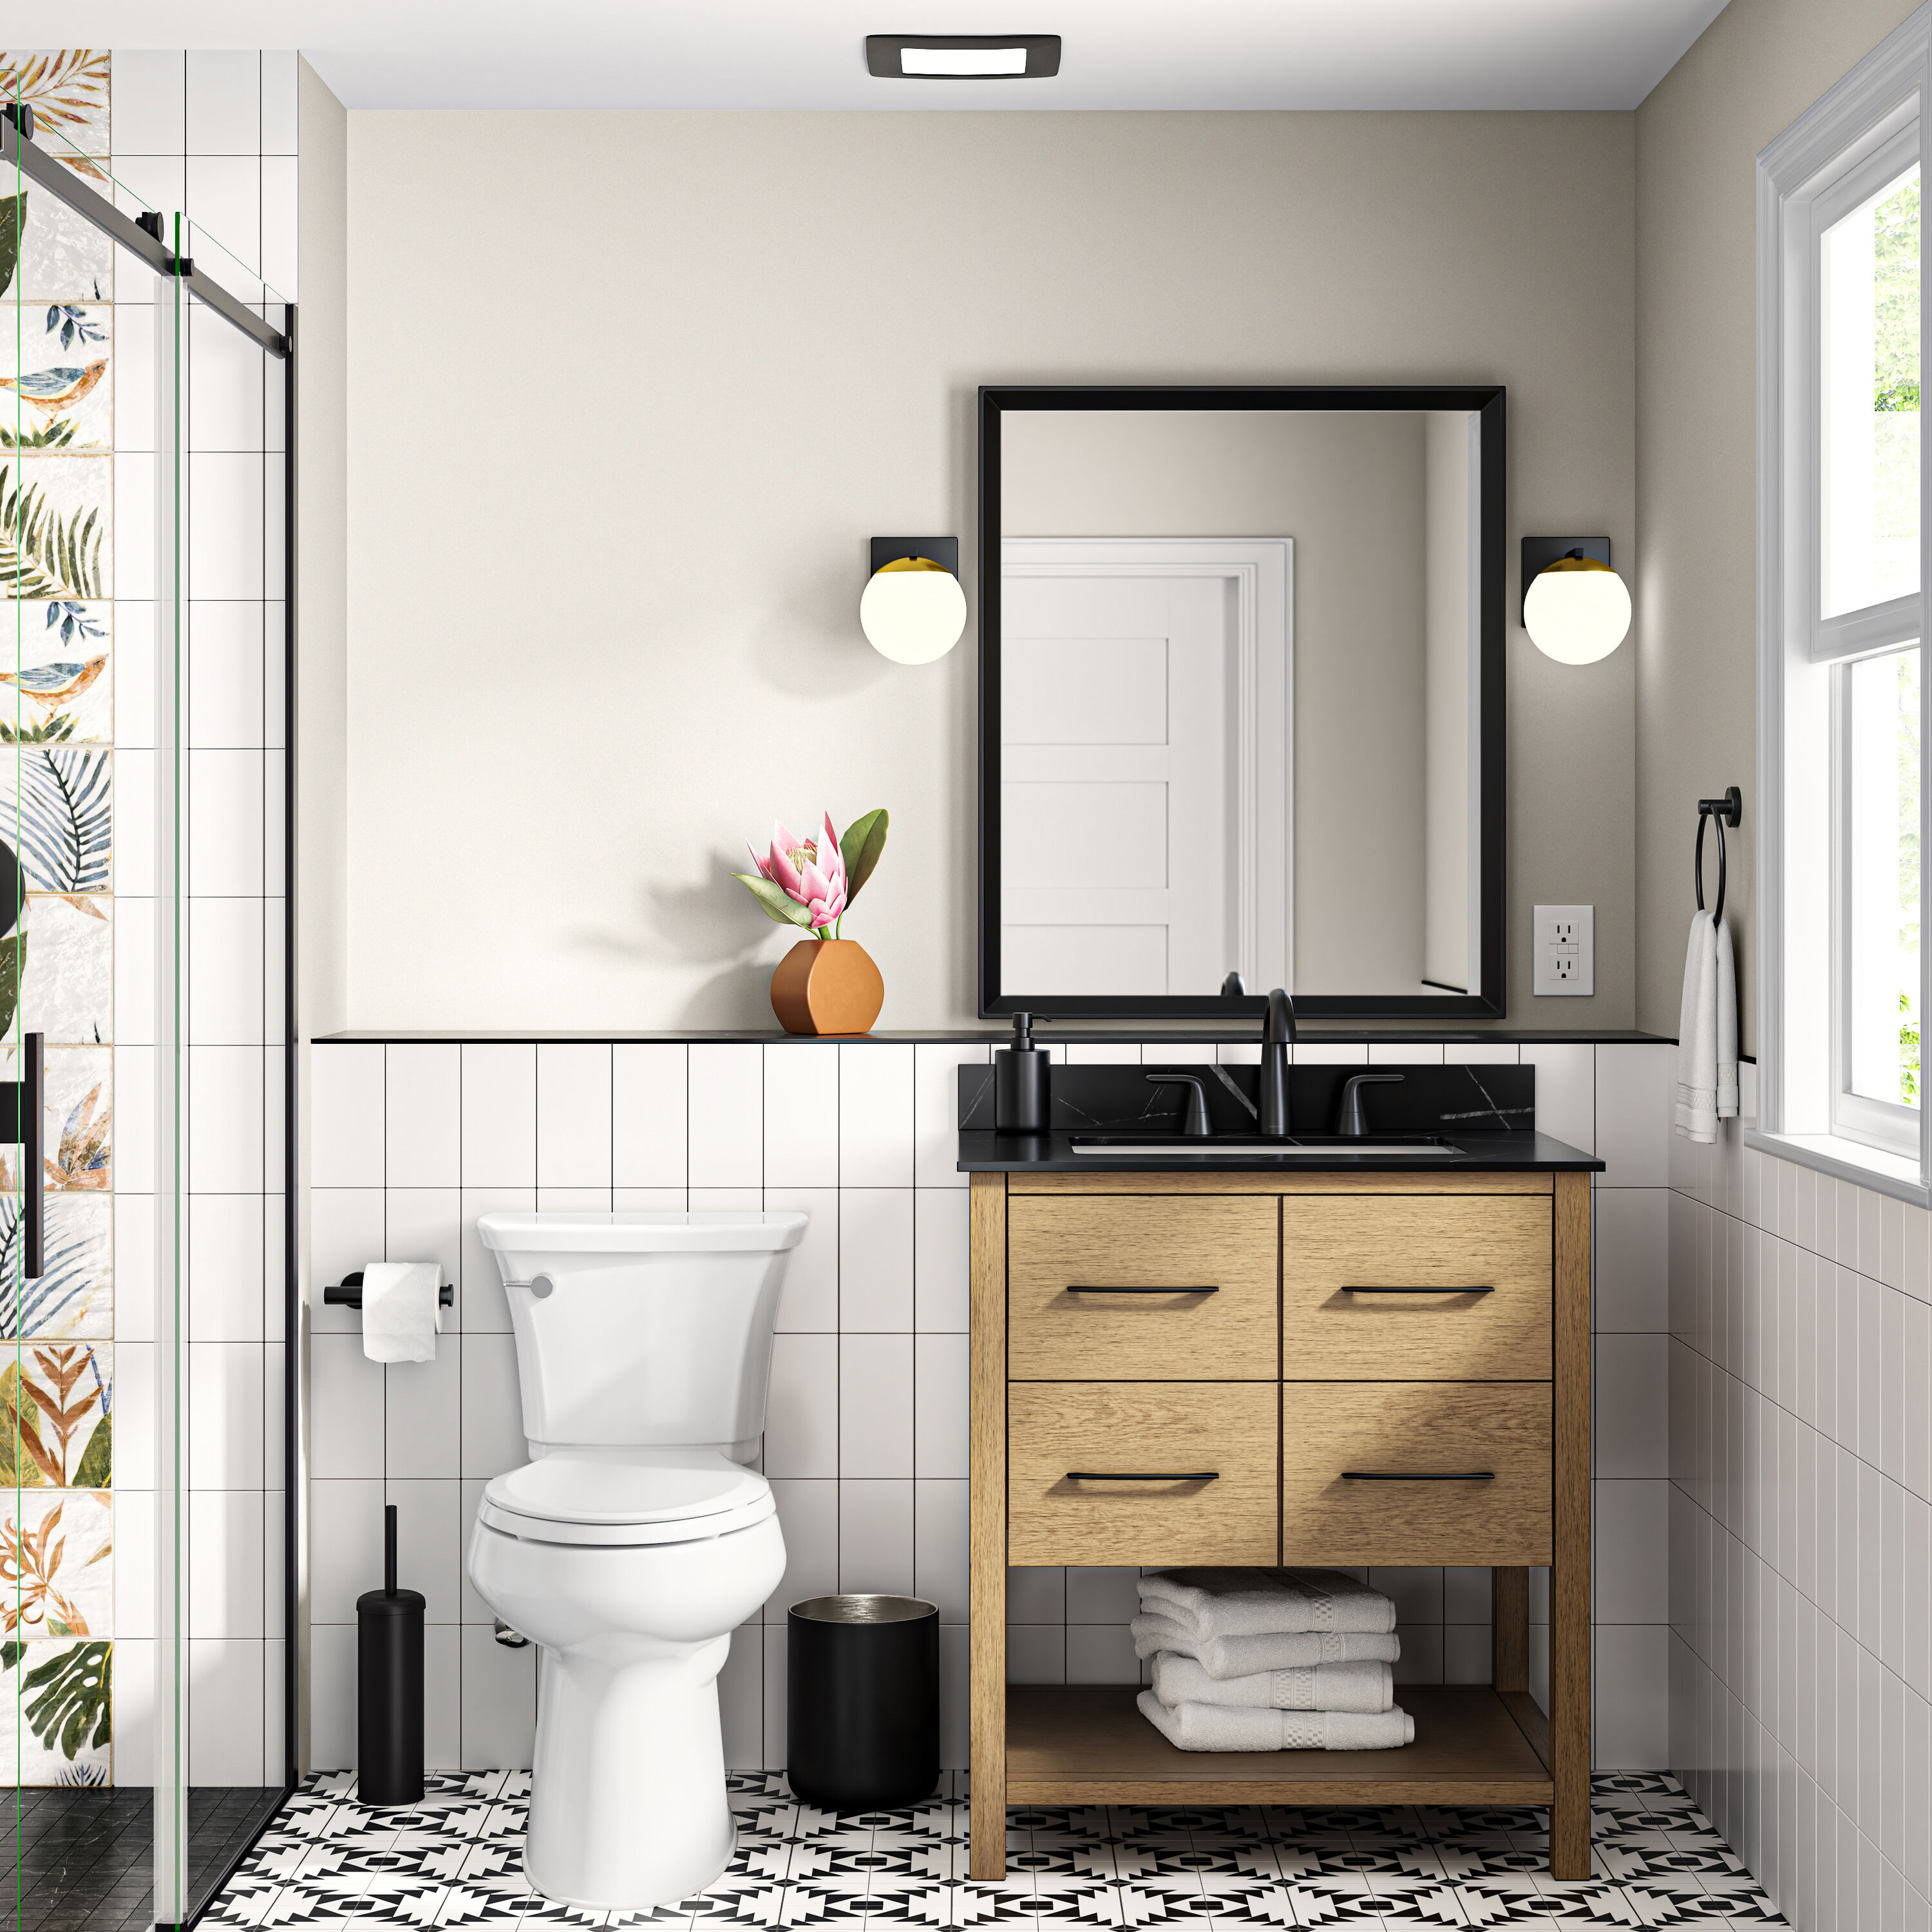 Bộ đồ nội thất phòng tắm Sanford sẽ khiến bạn mê mẩn bởi sự hoàn hảo và tinh tế của thiết kế. Được làm từ các chất liệu chất lượng cao, bộ đồ nội thất này sẽ giúp cho phòng tắm của bạn trở nên đẹp hơn và tiện nghi hơn bao giờ hết. Đừng bỏ lỡ cơ hội thưởng thức thiết kế nội thất này.